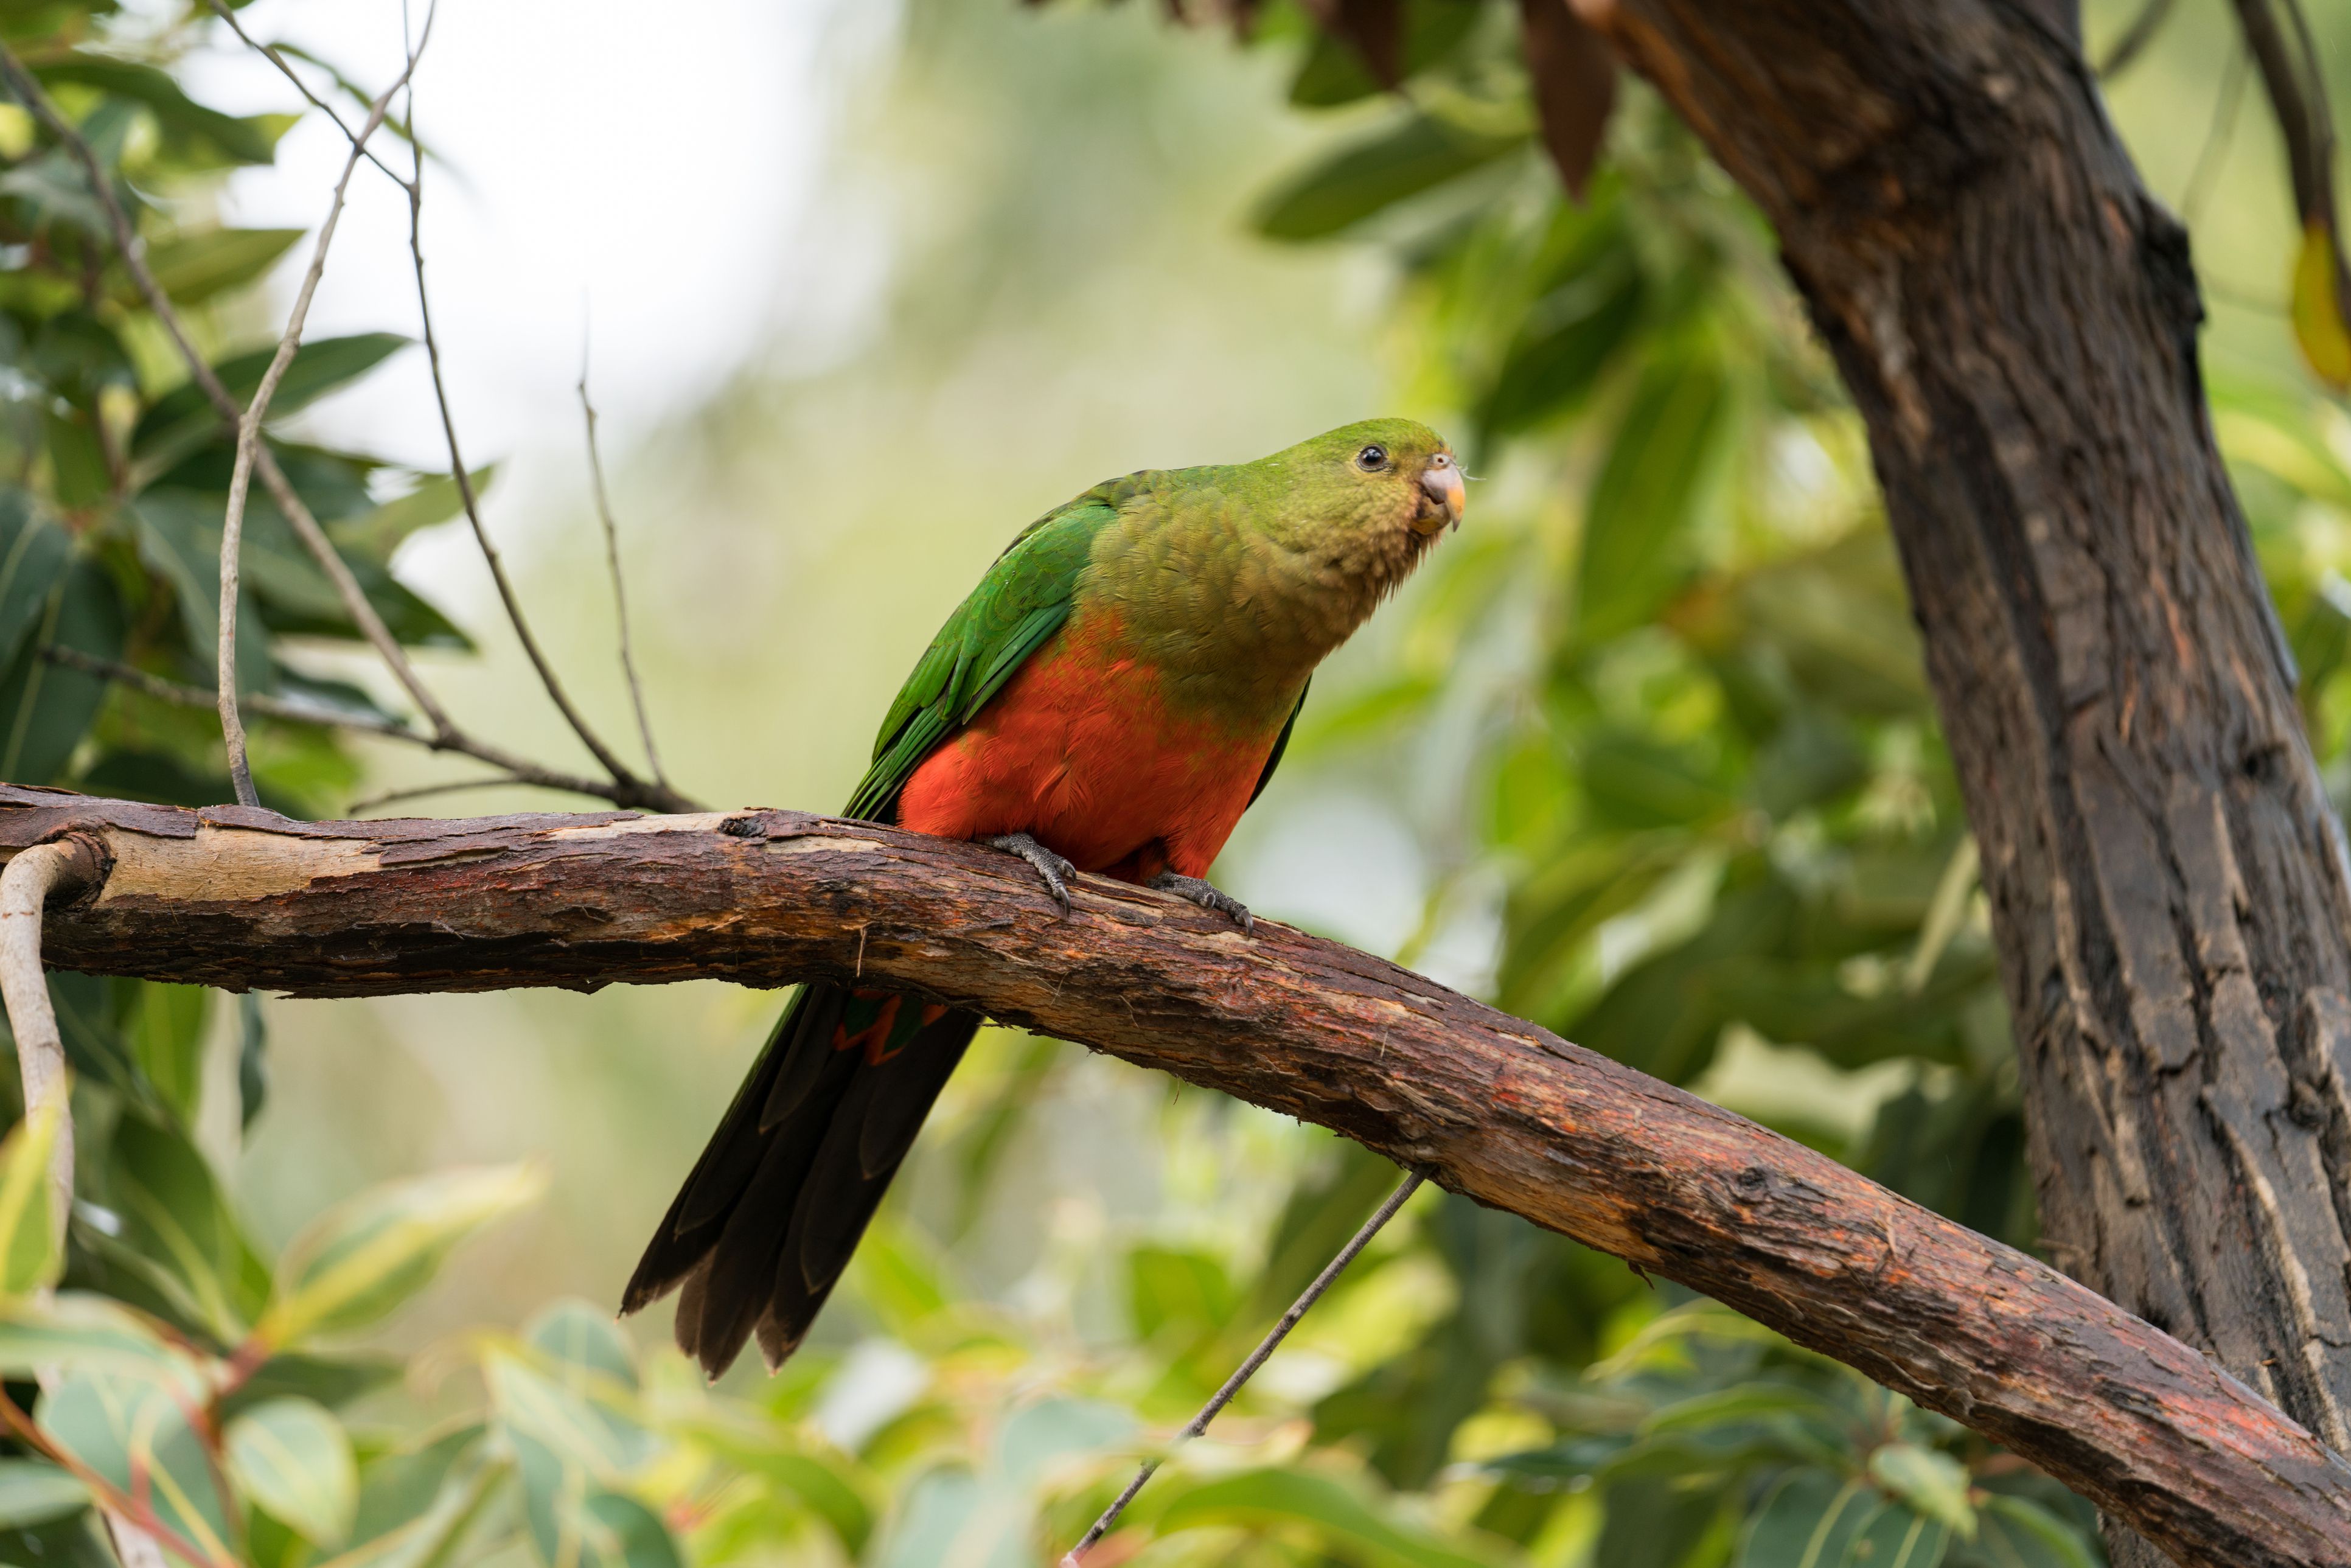 Female Australian king parrot